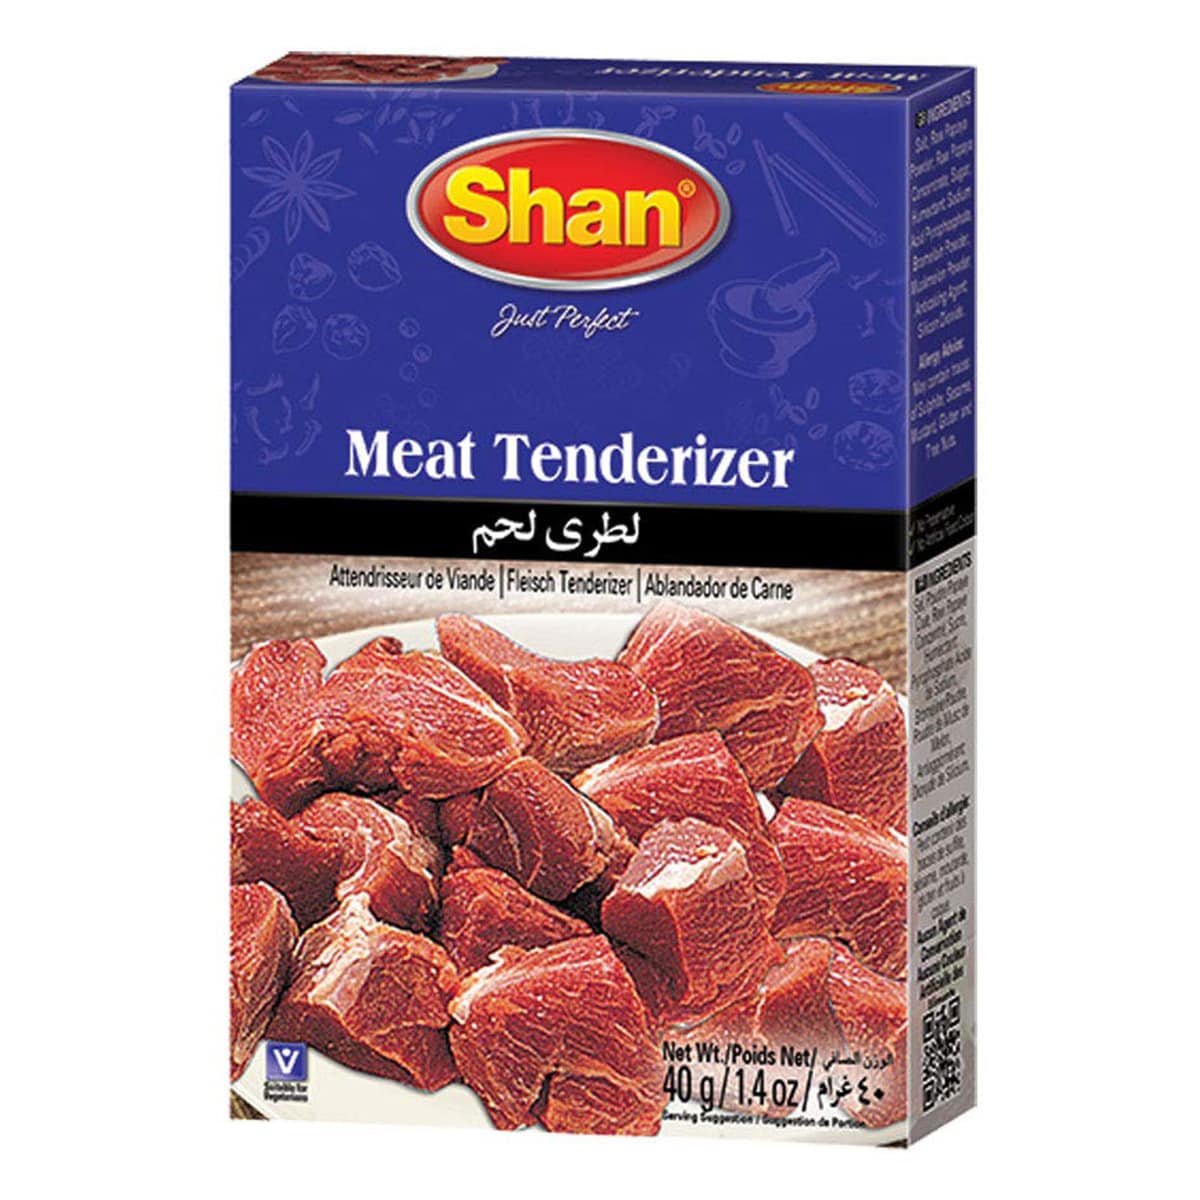 Buy Shan Meat Tenderizer - 40 gm